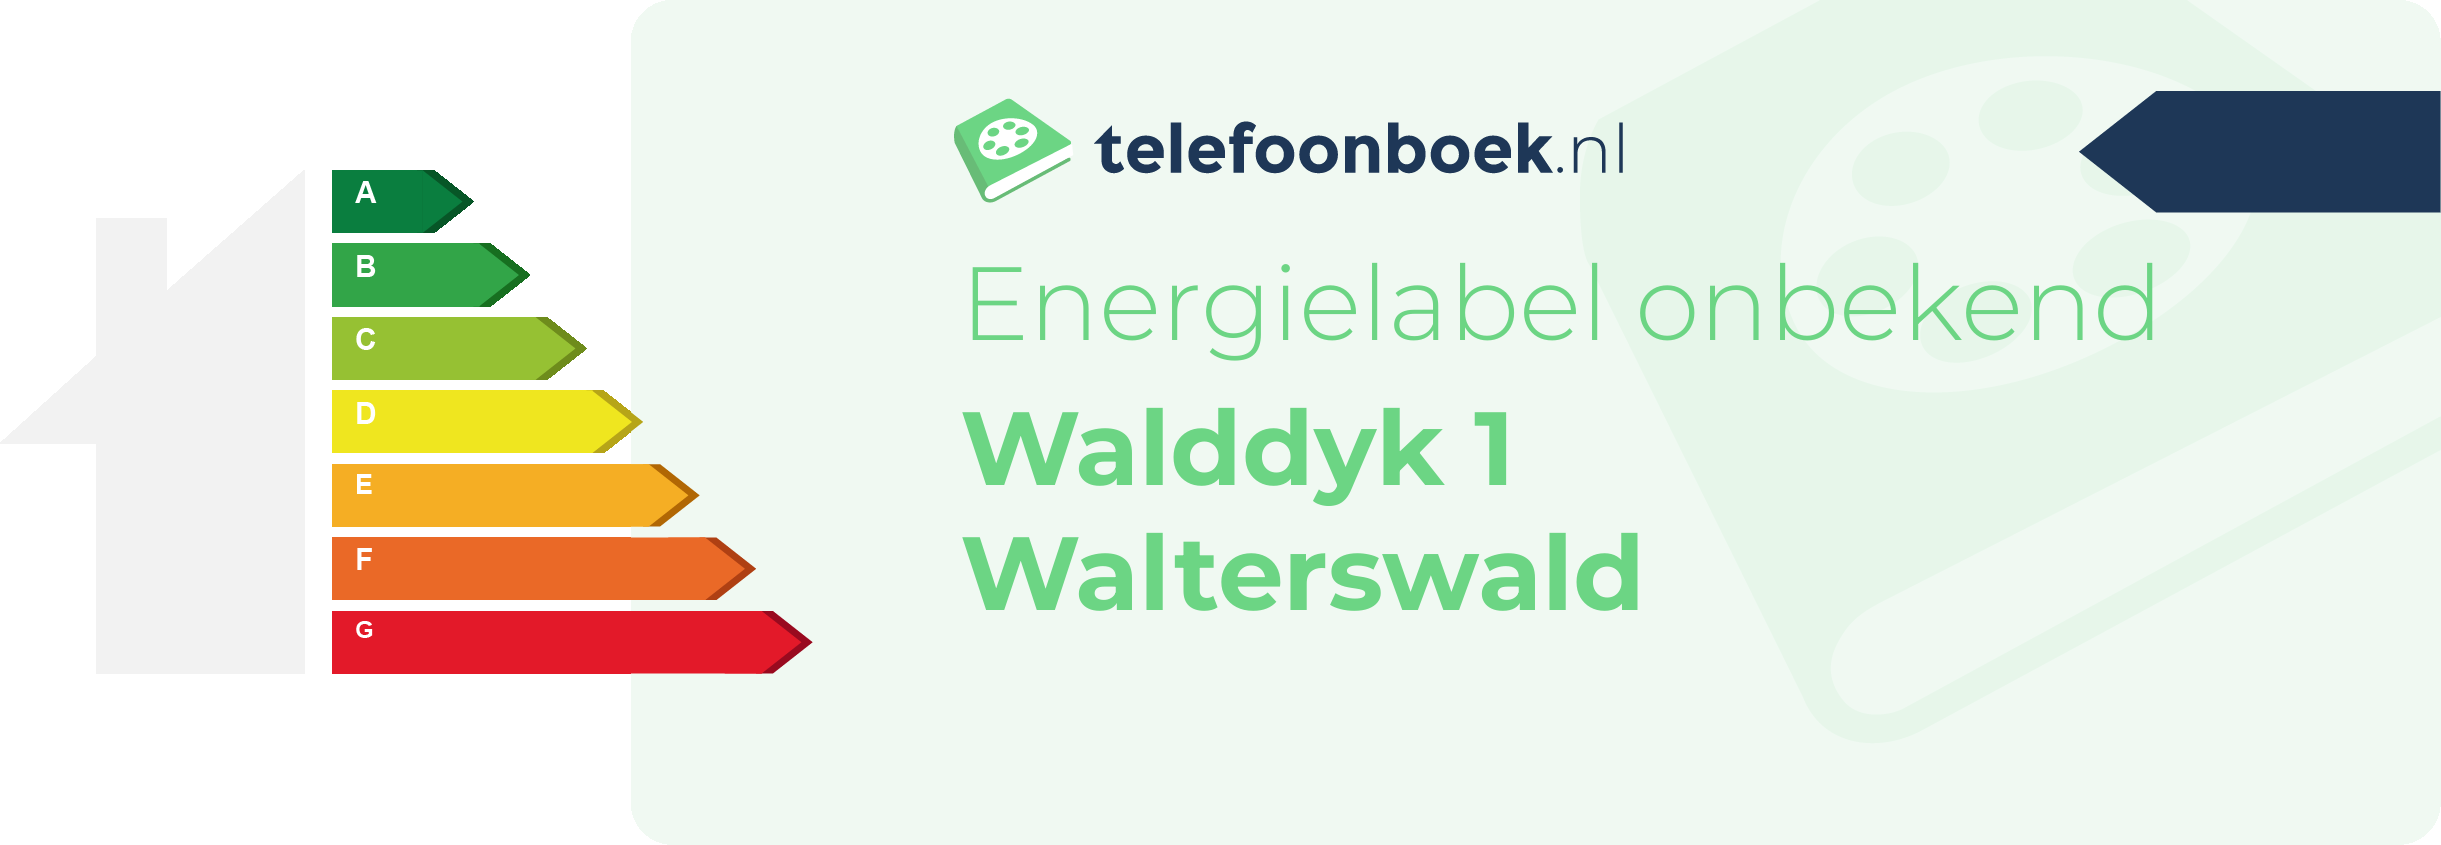 Energielabel Walddyk 1 Walterswald